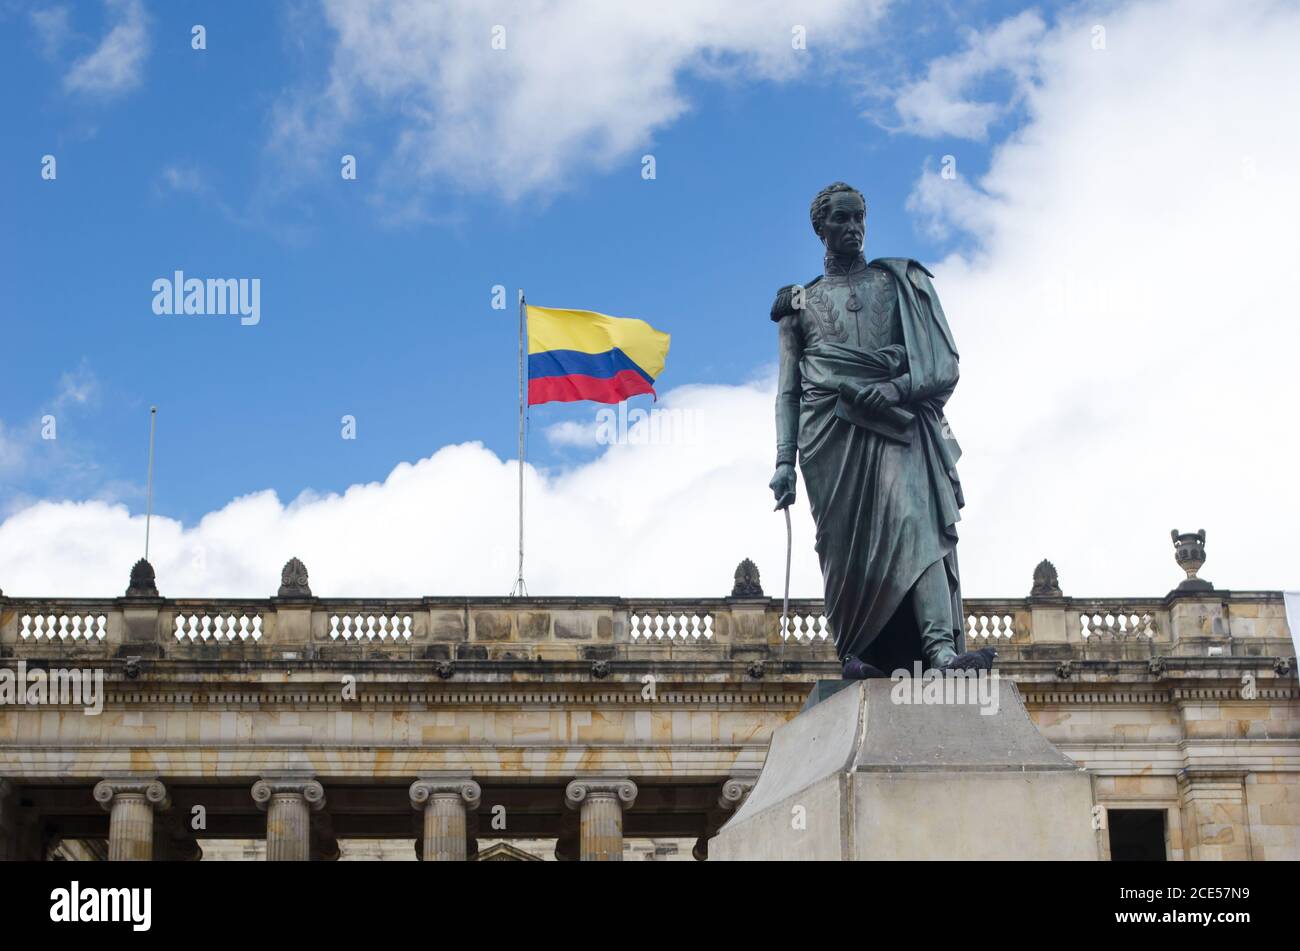 Façade du Capitolio Nacional à la place Bolivar de Bogota. Le drapeau colombien et la statue de Bolivar sont également visibles Banque D'Images